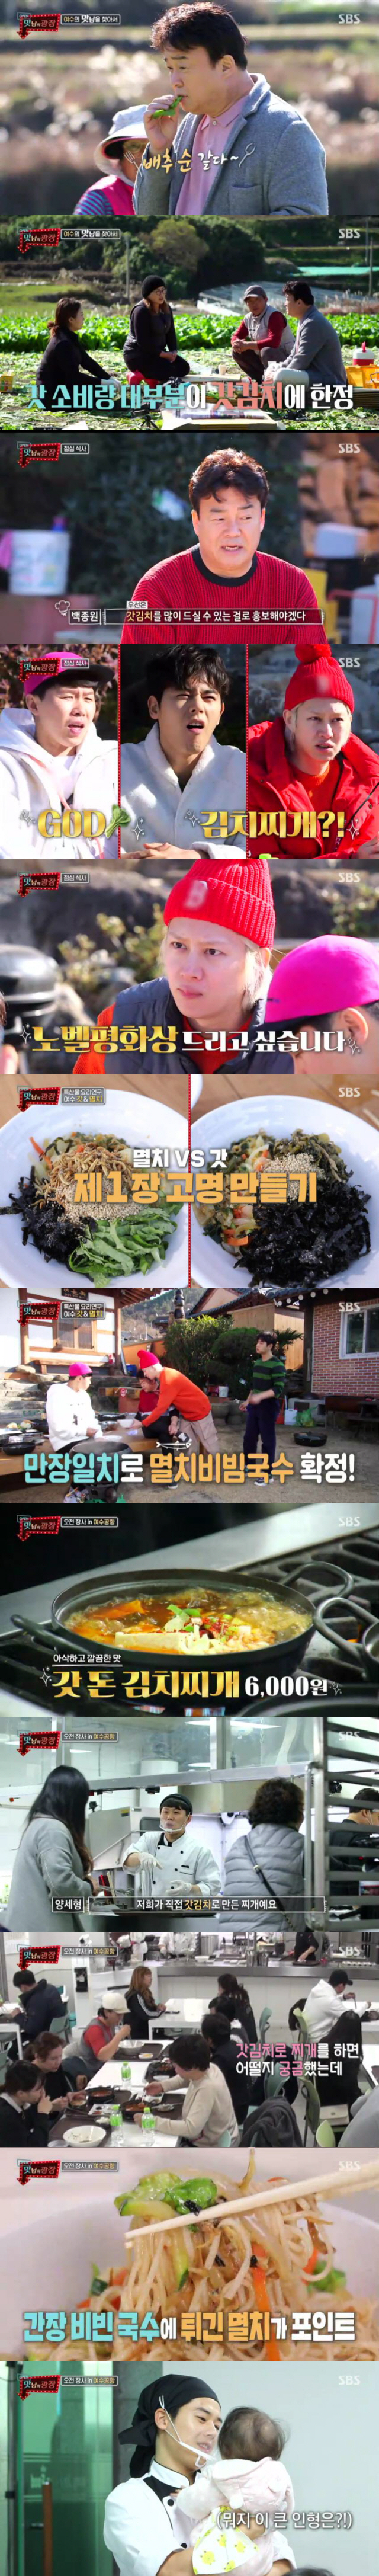 '맛남의 광장' 백종원, 멤버들 아침 식사 준비..'갓 볶음 라면' 최고의 1분